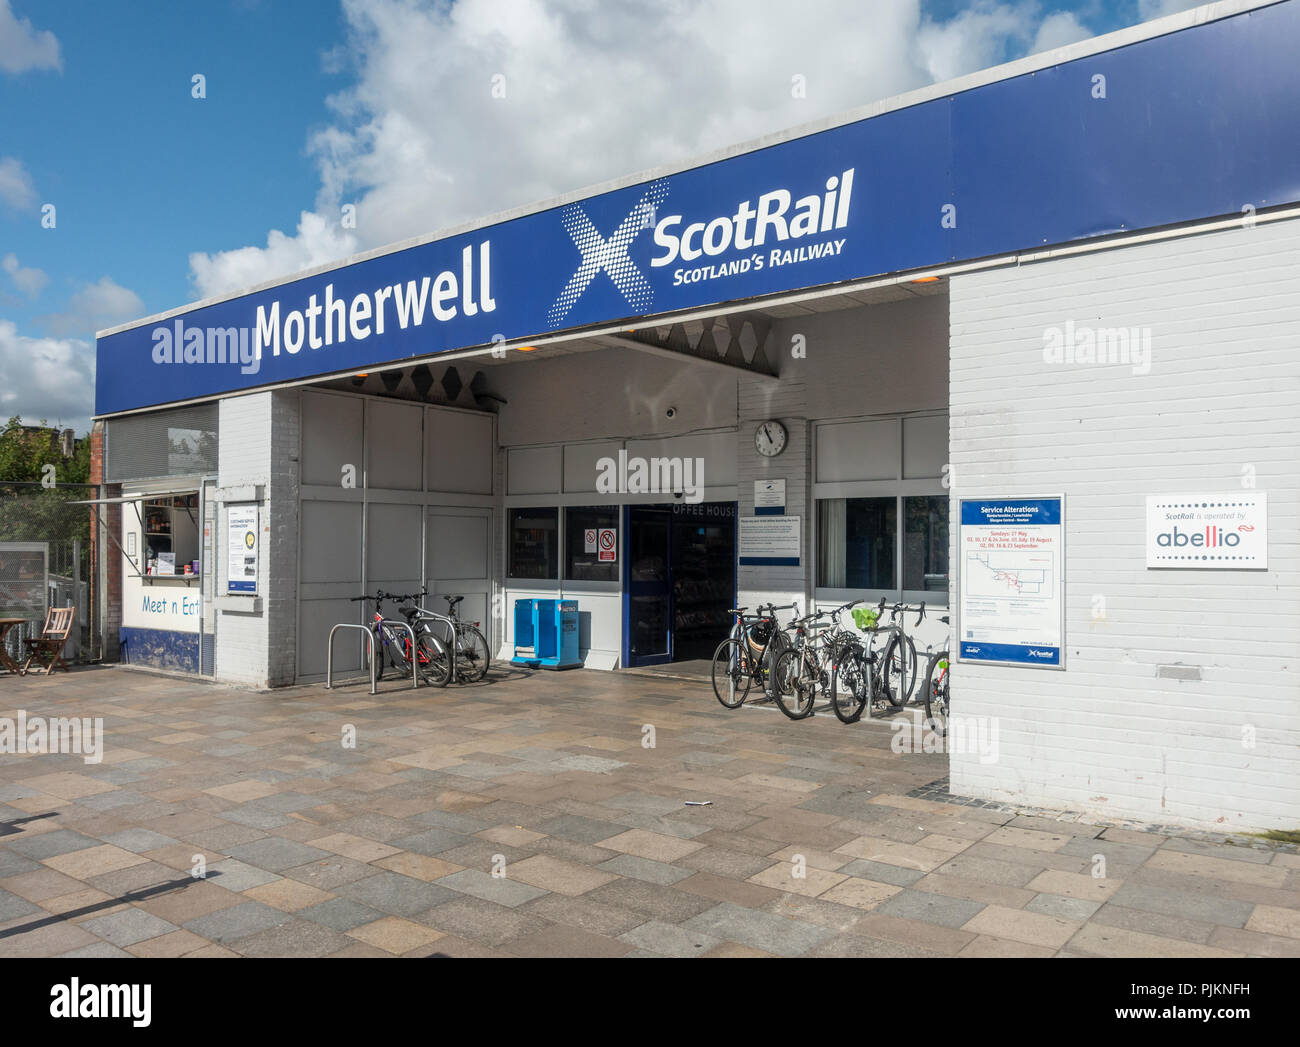 La entrada principal a la estación de tren de ScotRail Motherwell en North Lanarkshire, Escocia, con el cumplir n comer snack kiosco y portabicicletas. Foto de stock